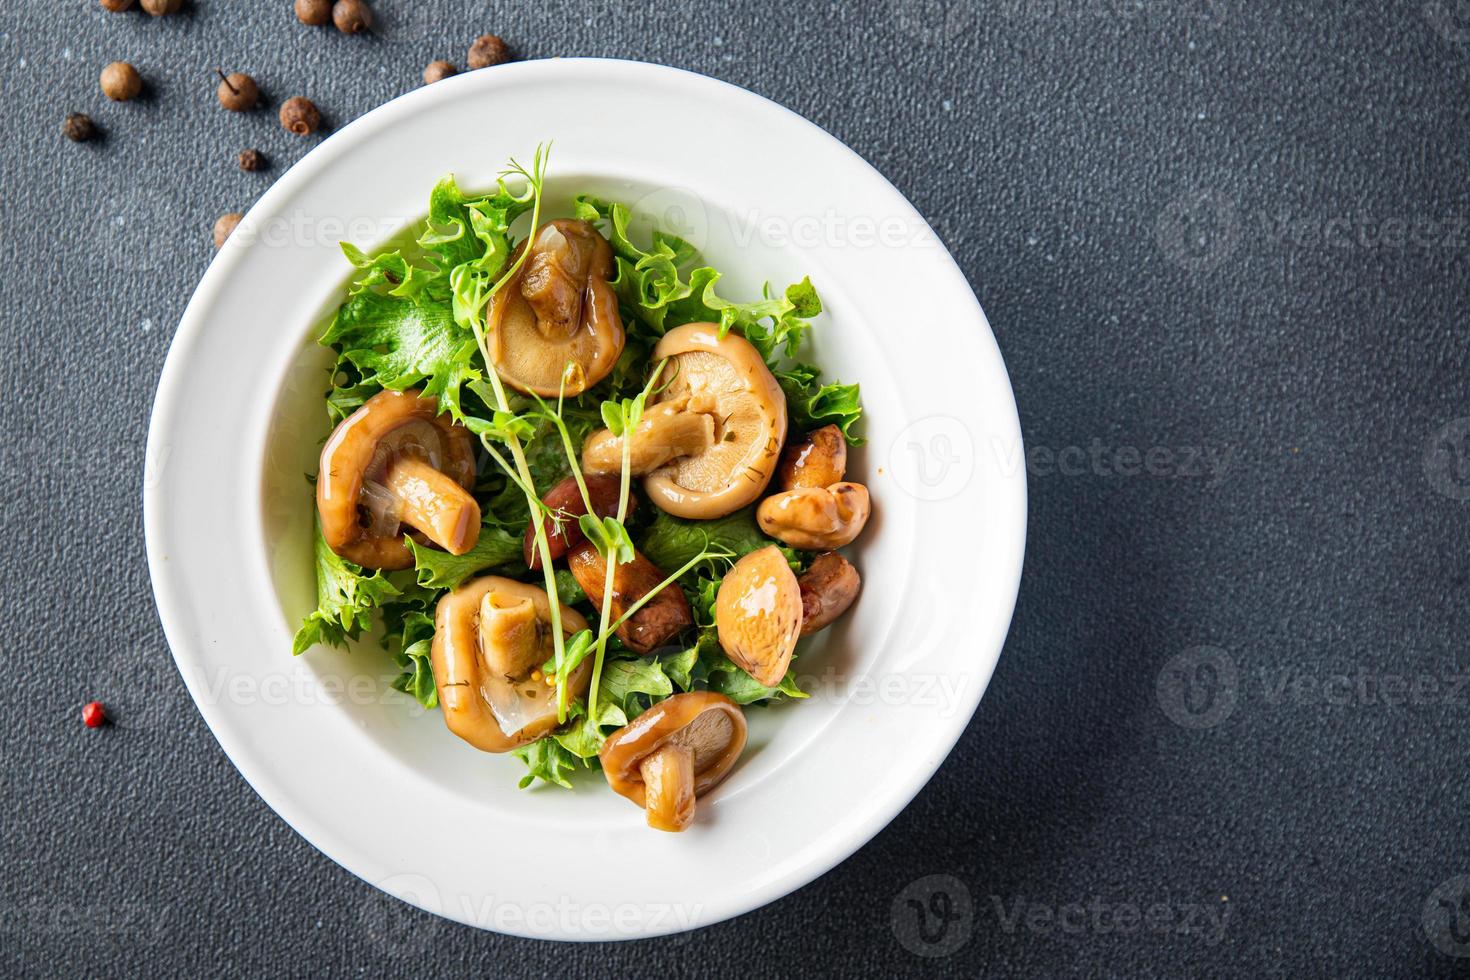 ingelegde champignonmix salade veganistisch of vegetarisch eten foto